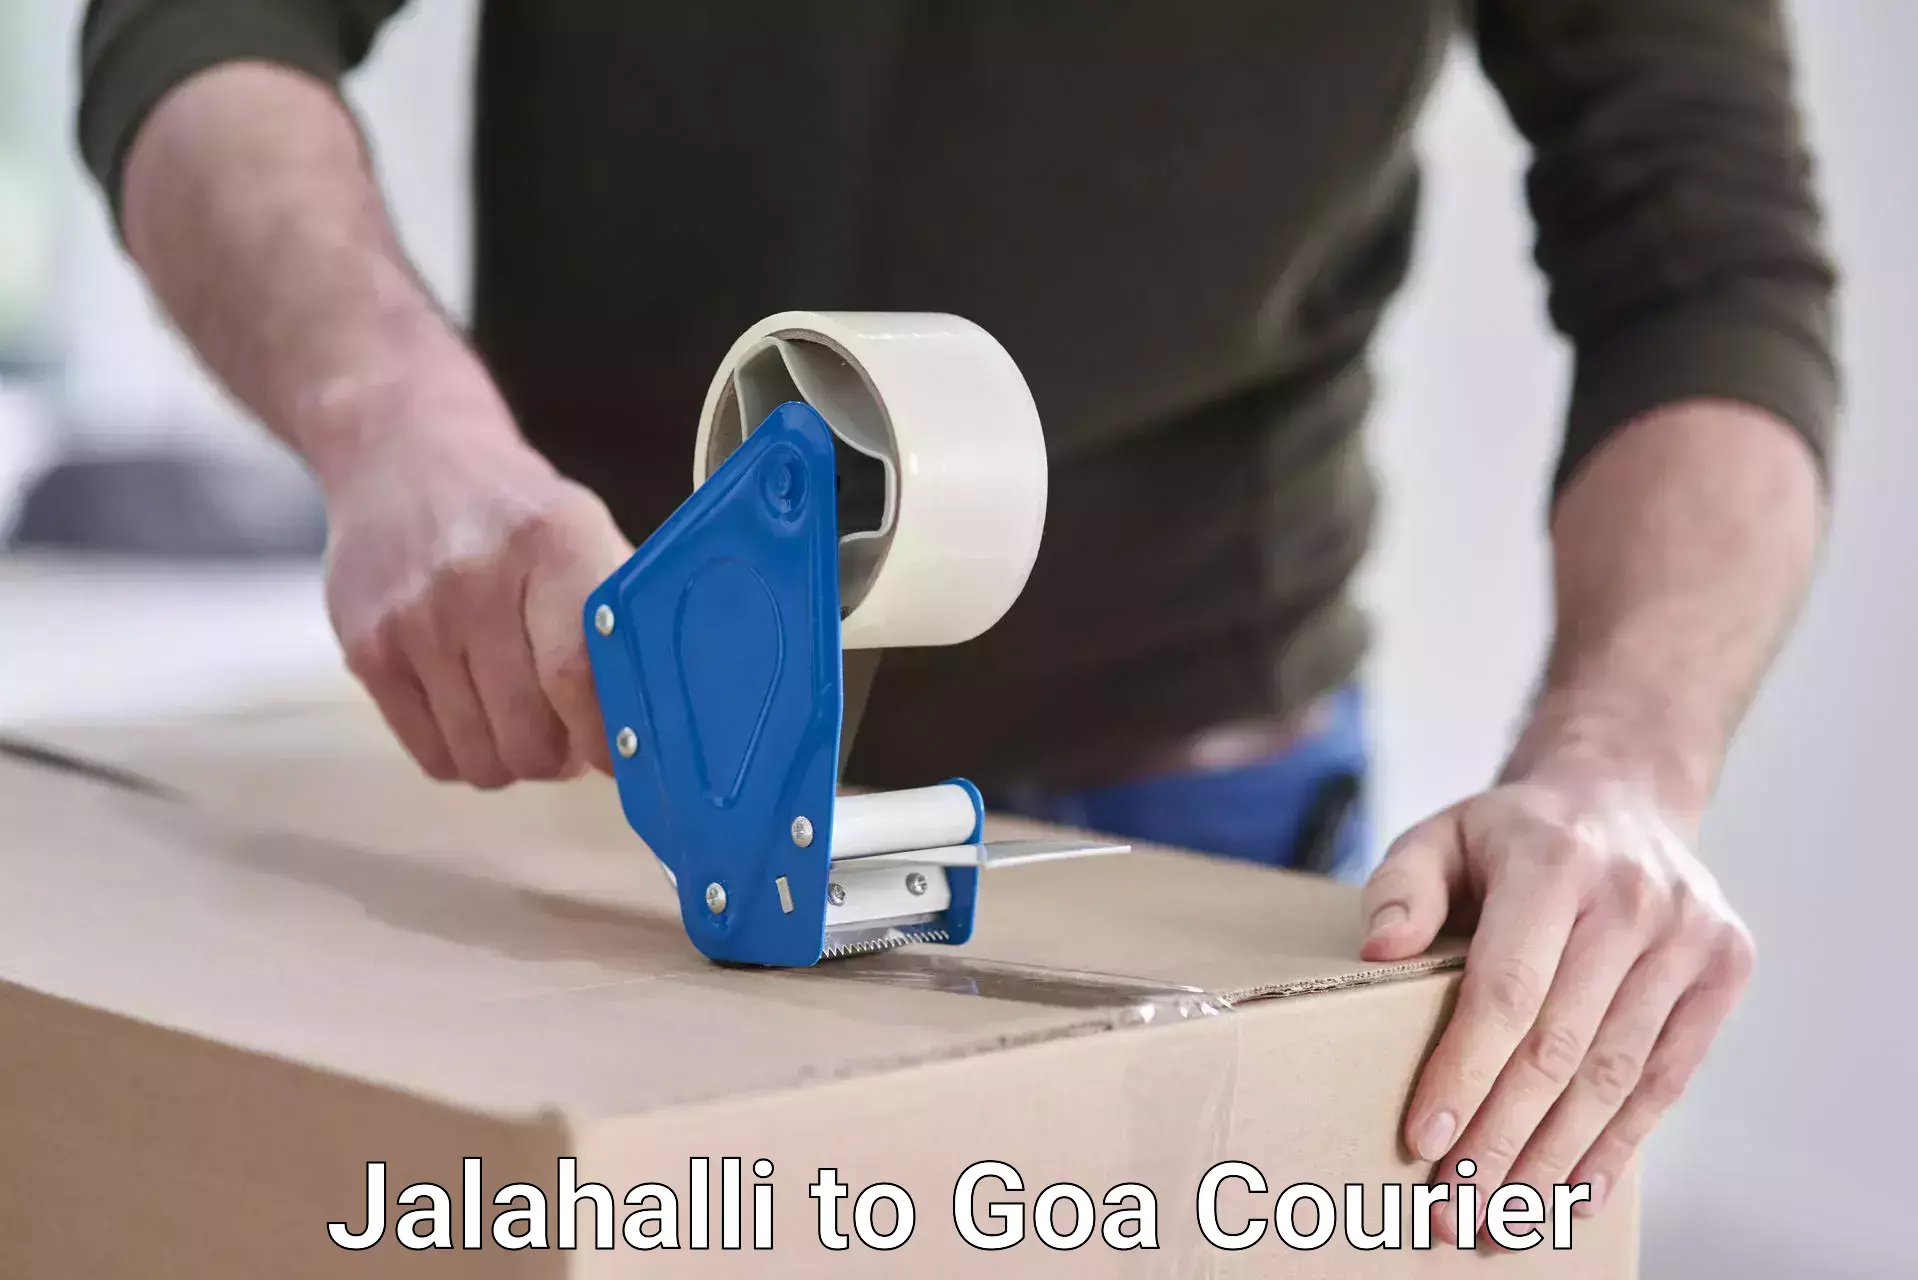 Global shipping networks Jalahalli to NIT Goa